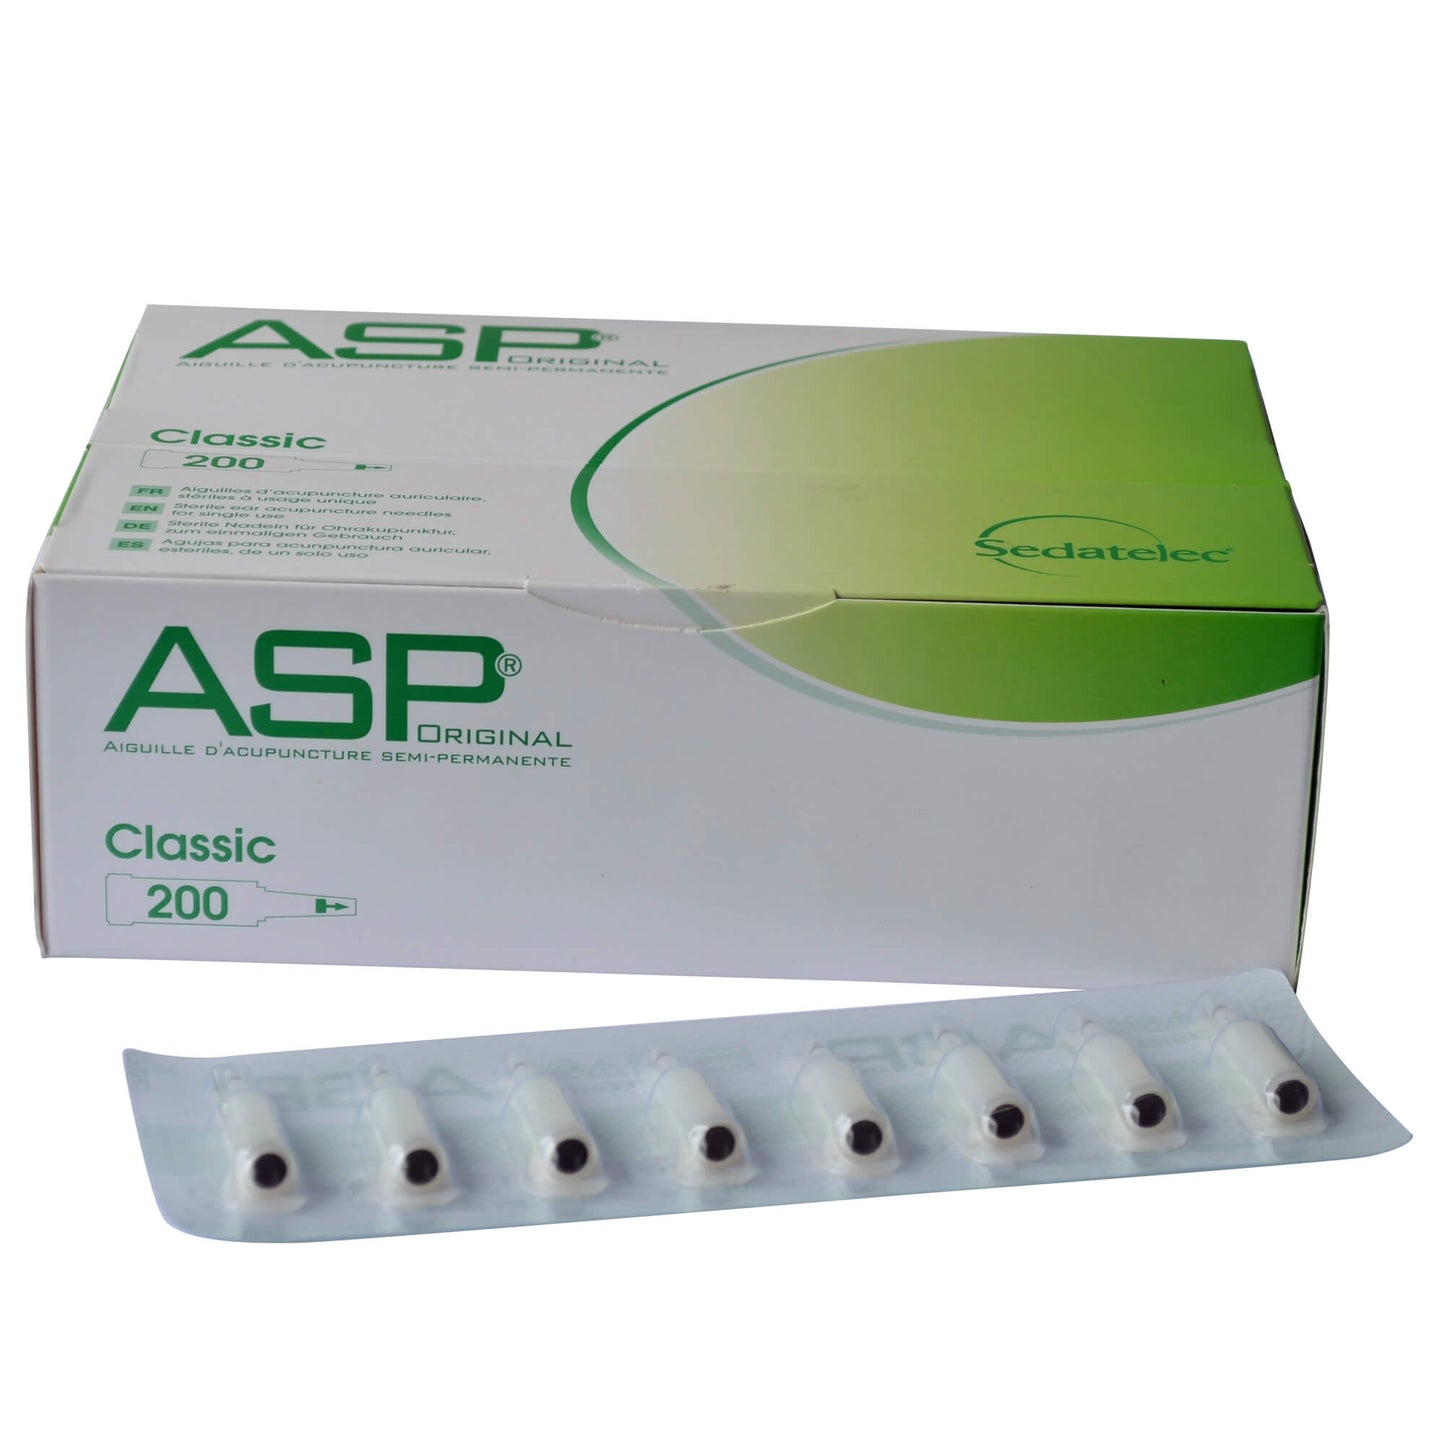 ASP Classic 200 acupunctuurnaalden auricular